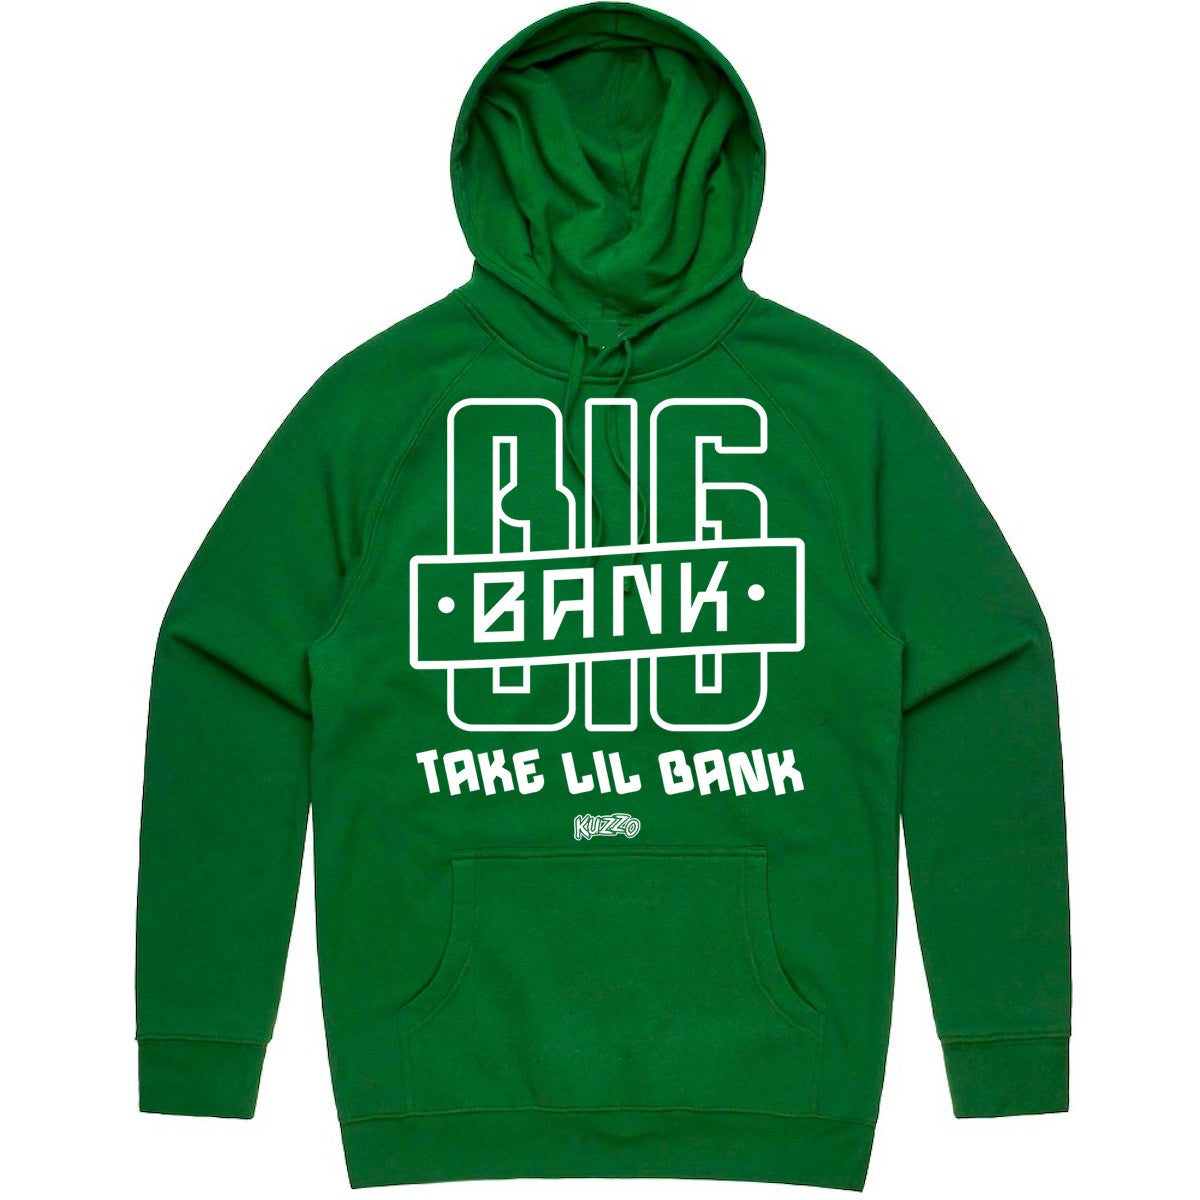 Penny 1 Stadium Green Hoodie - Jordan Lucky Green Hoodie - Big Bank